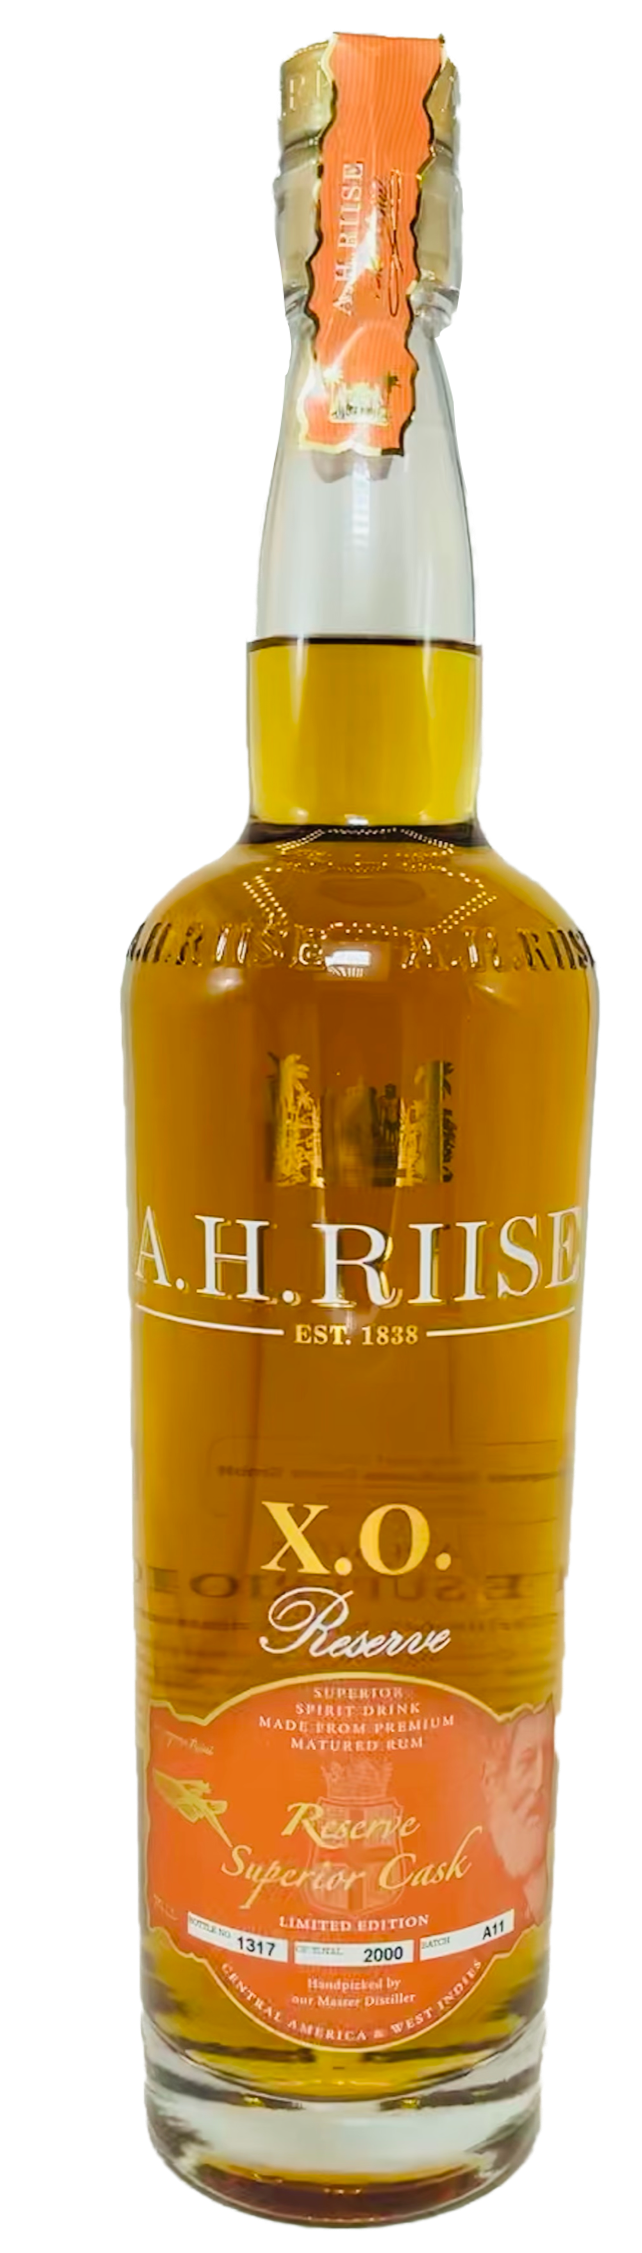 A.H. Riise XO Reserve Rum - Superior Cask Rum 40% vol. 0,7l